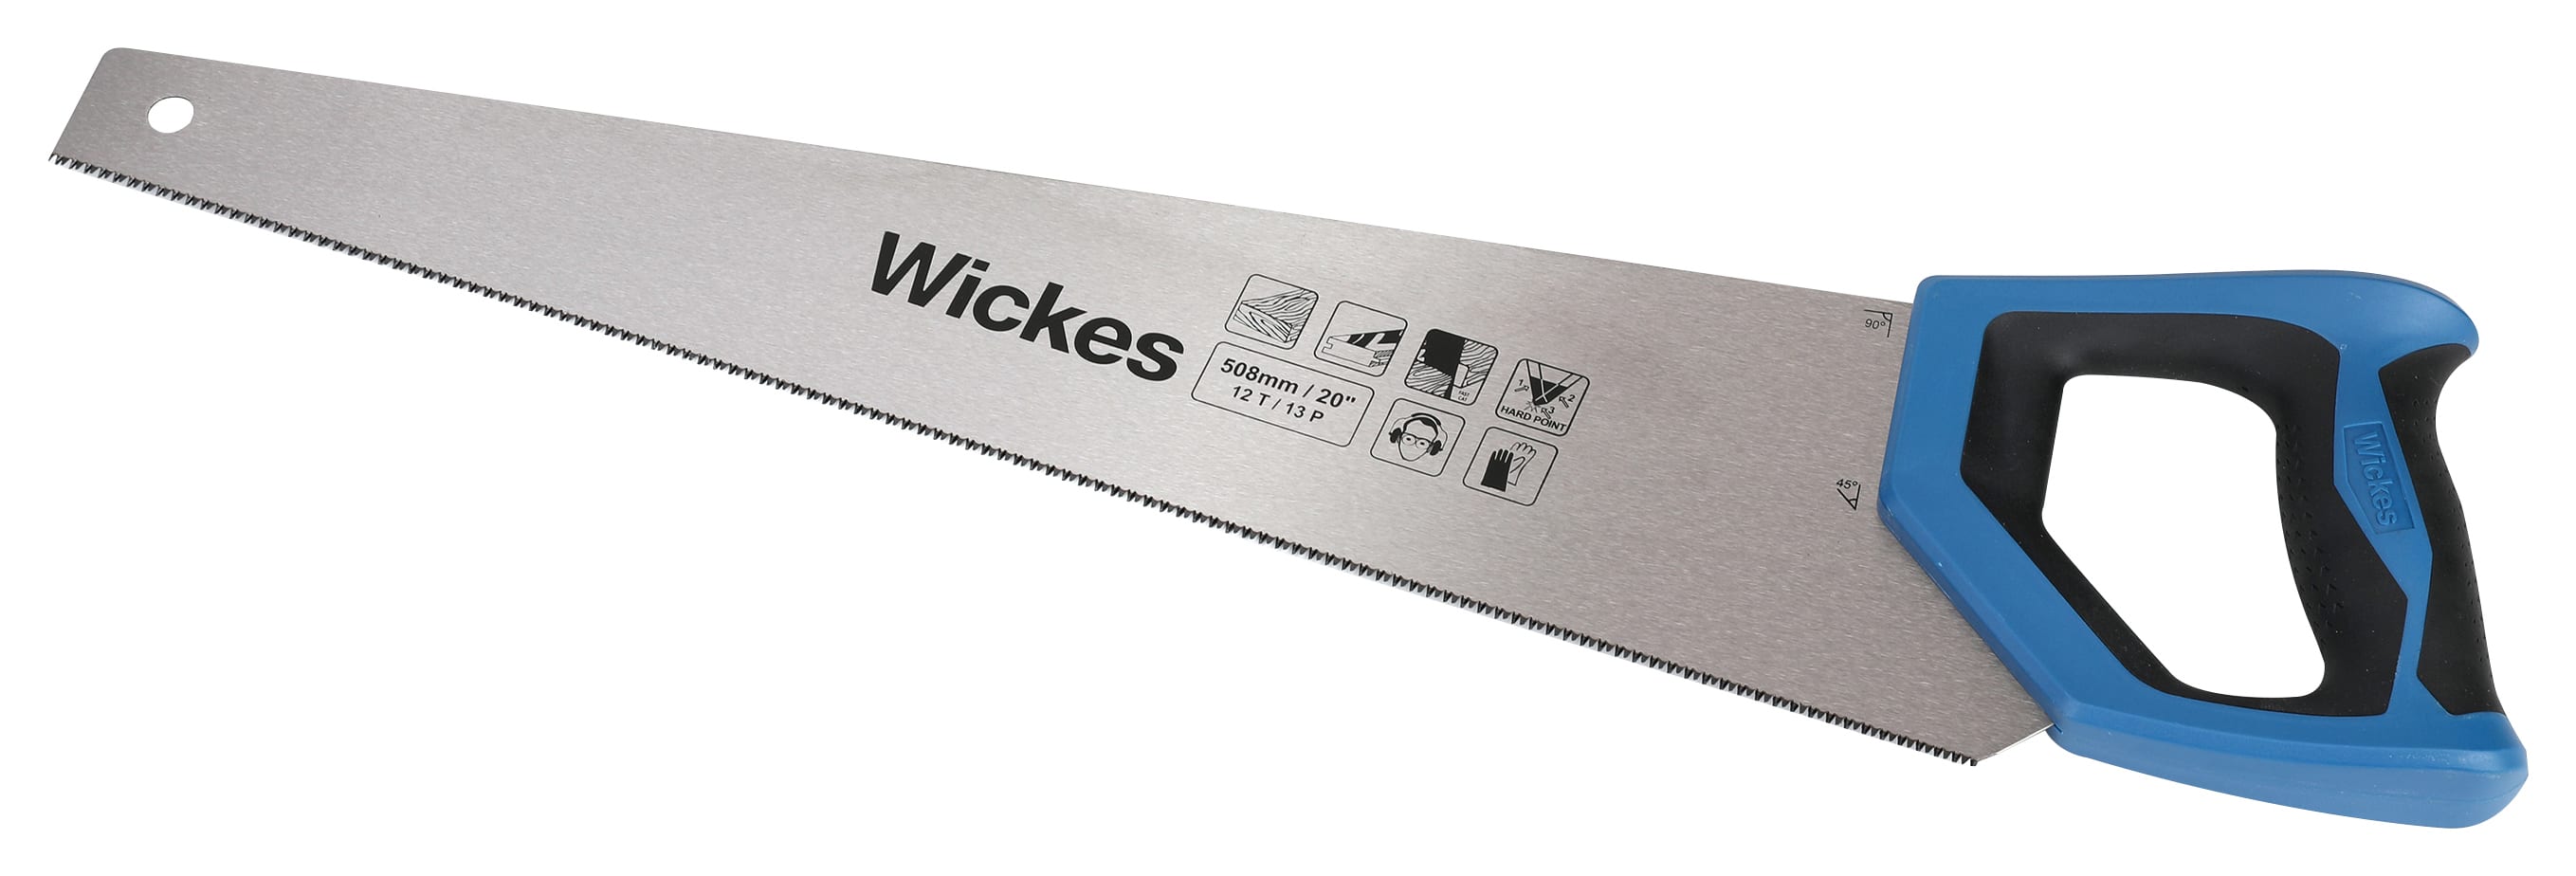 Wickes Fine Cut Panel Handsaw - 20in